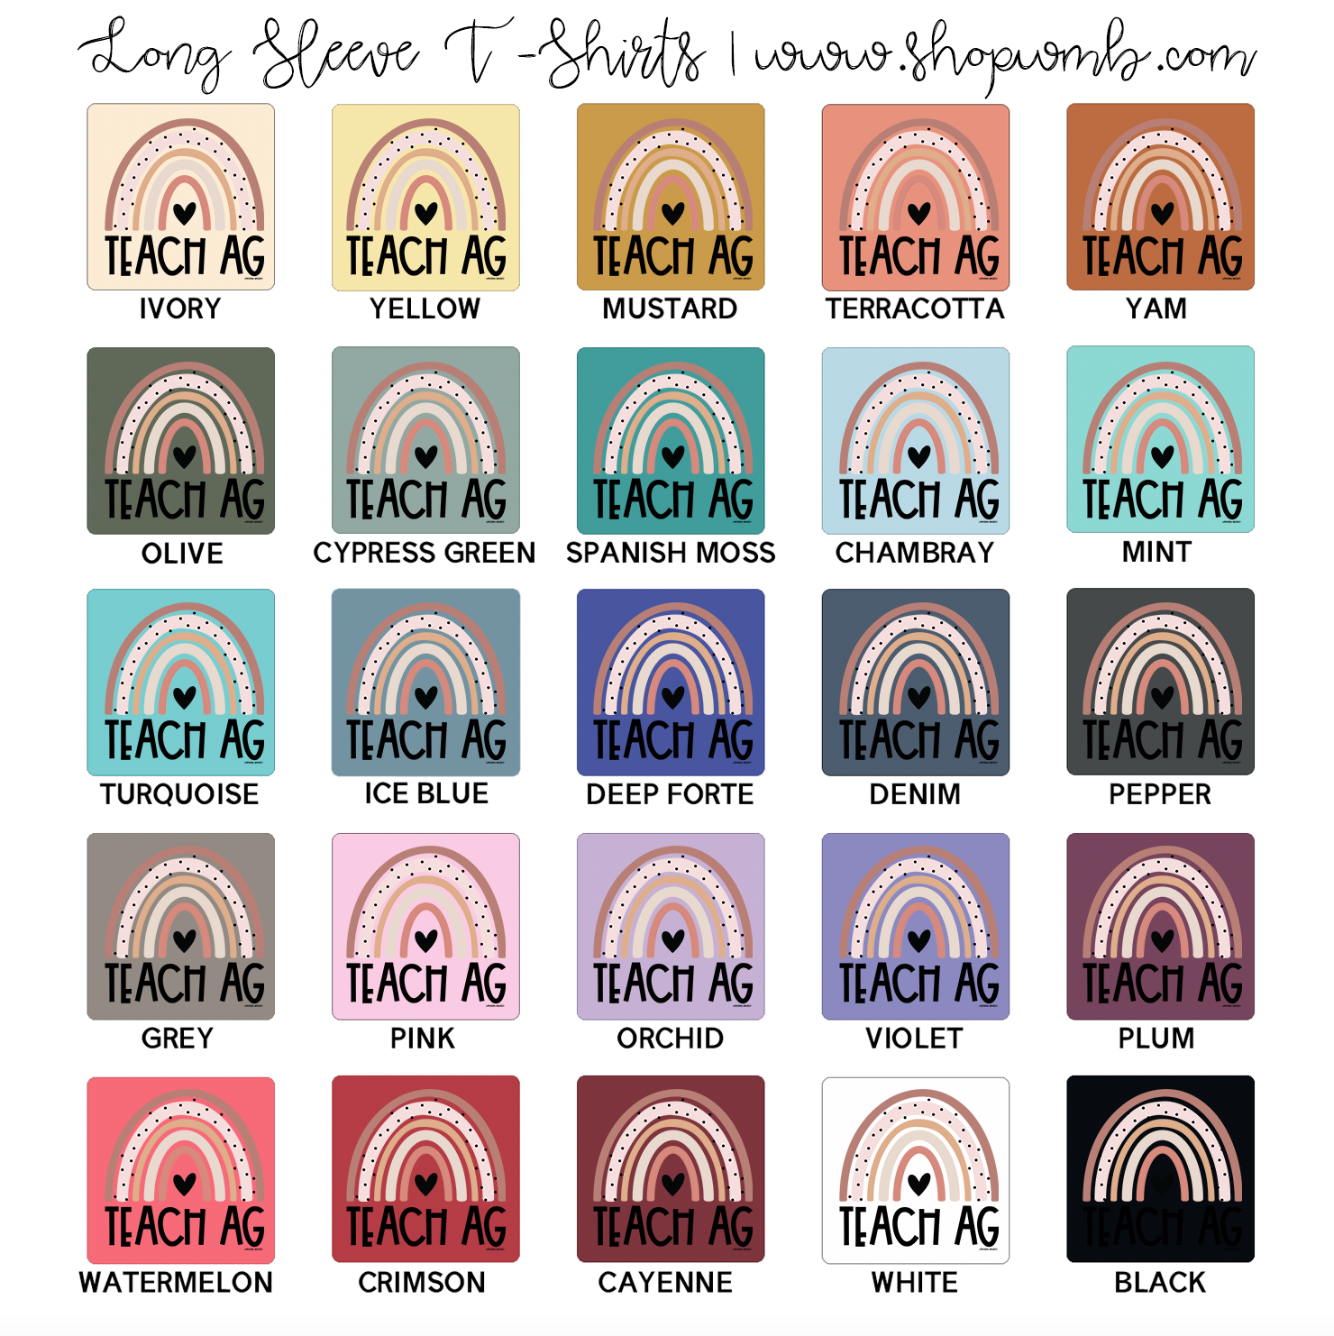 Rainbow Teach Ag LONG SLEEVE T-Shirt (S-3XL) - Multiple Colors!